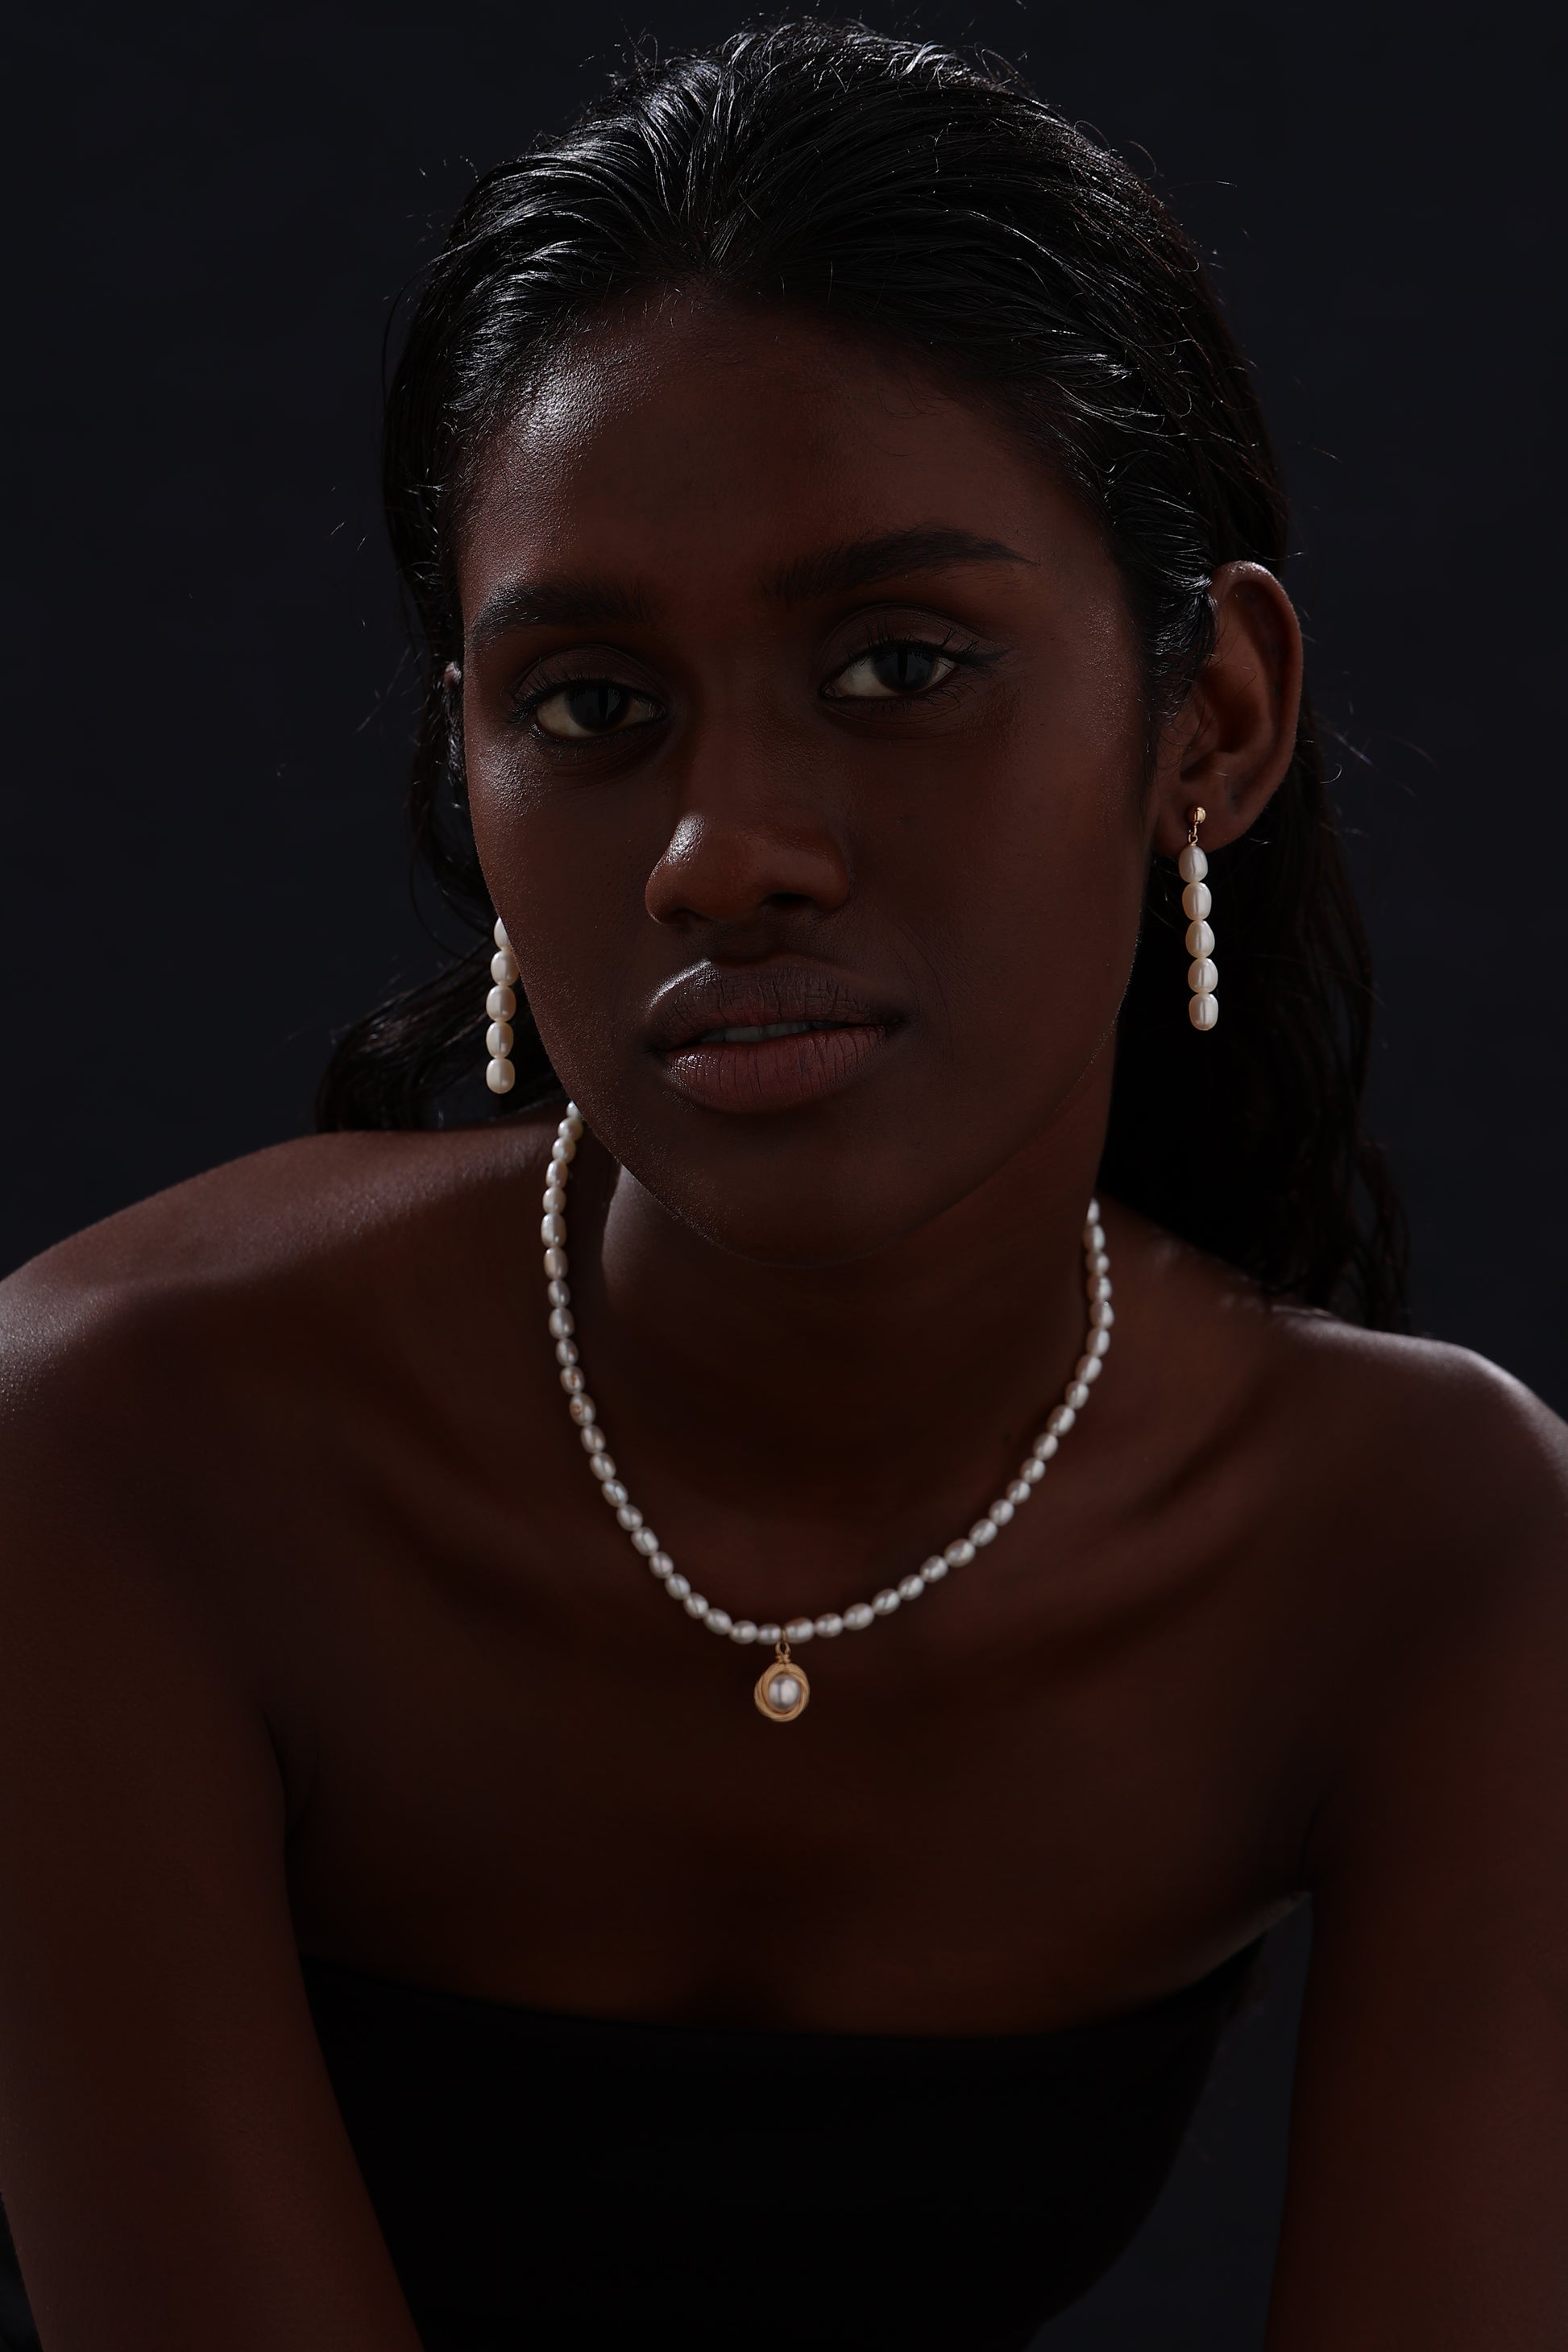 Freshwater Pearl Drop Earrings - 18K Gold Plated - Earrings - ONNNIII